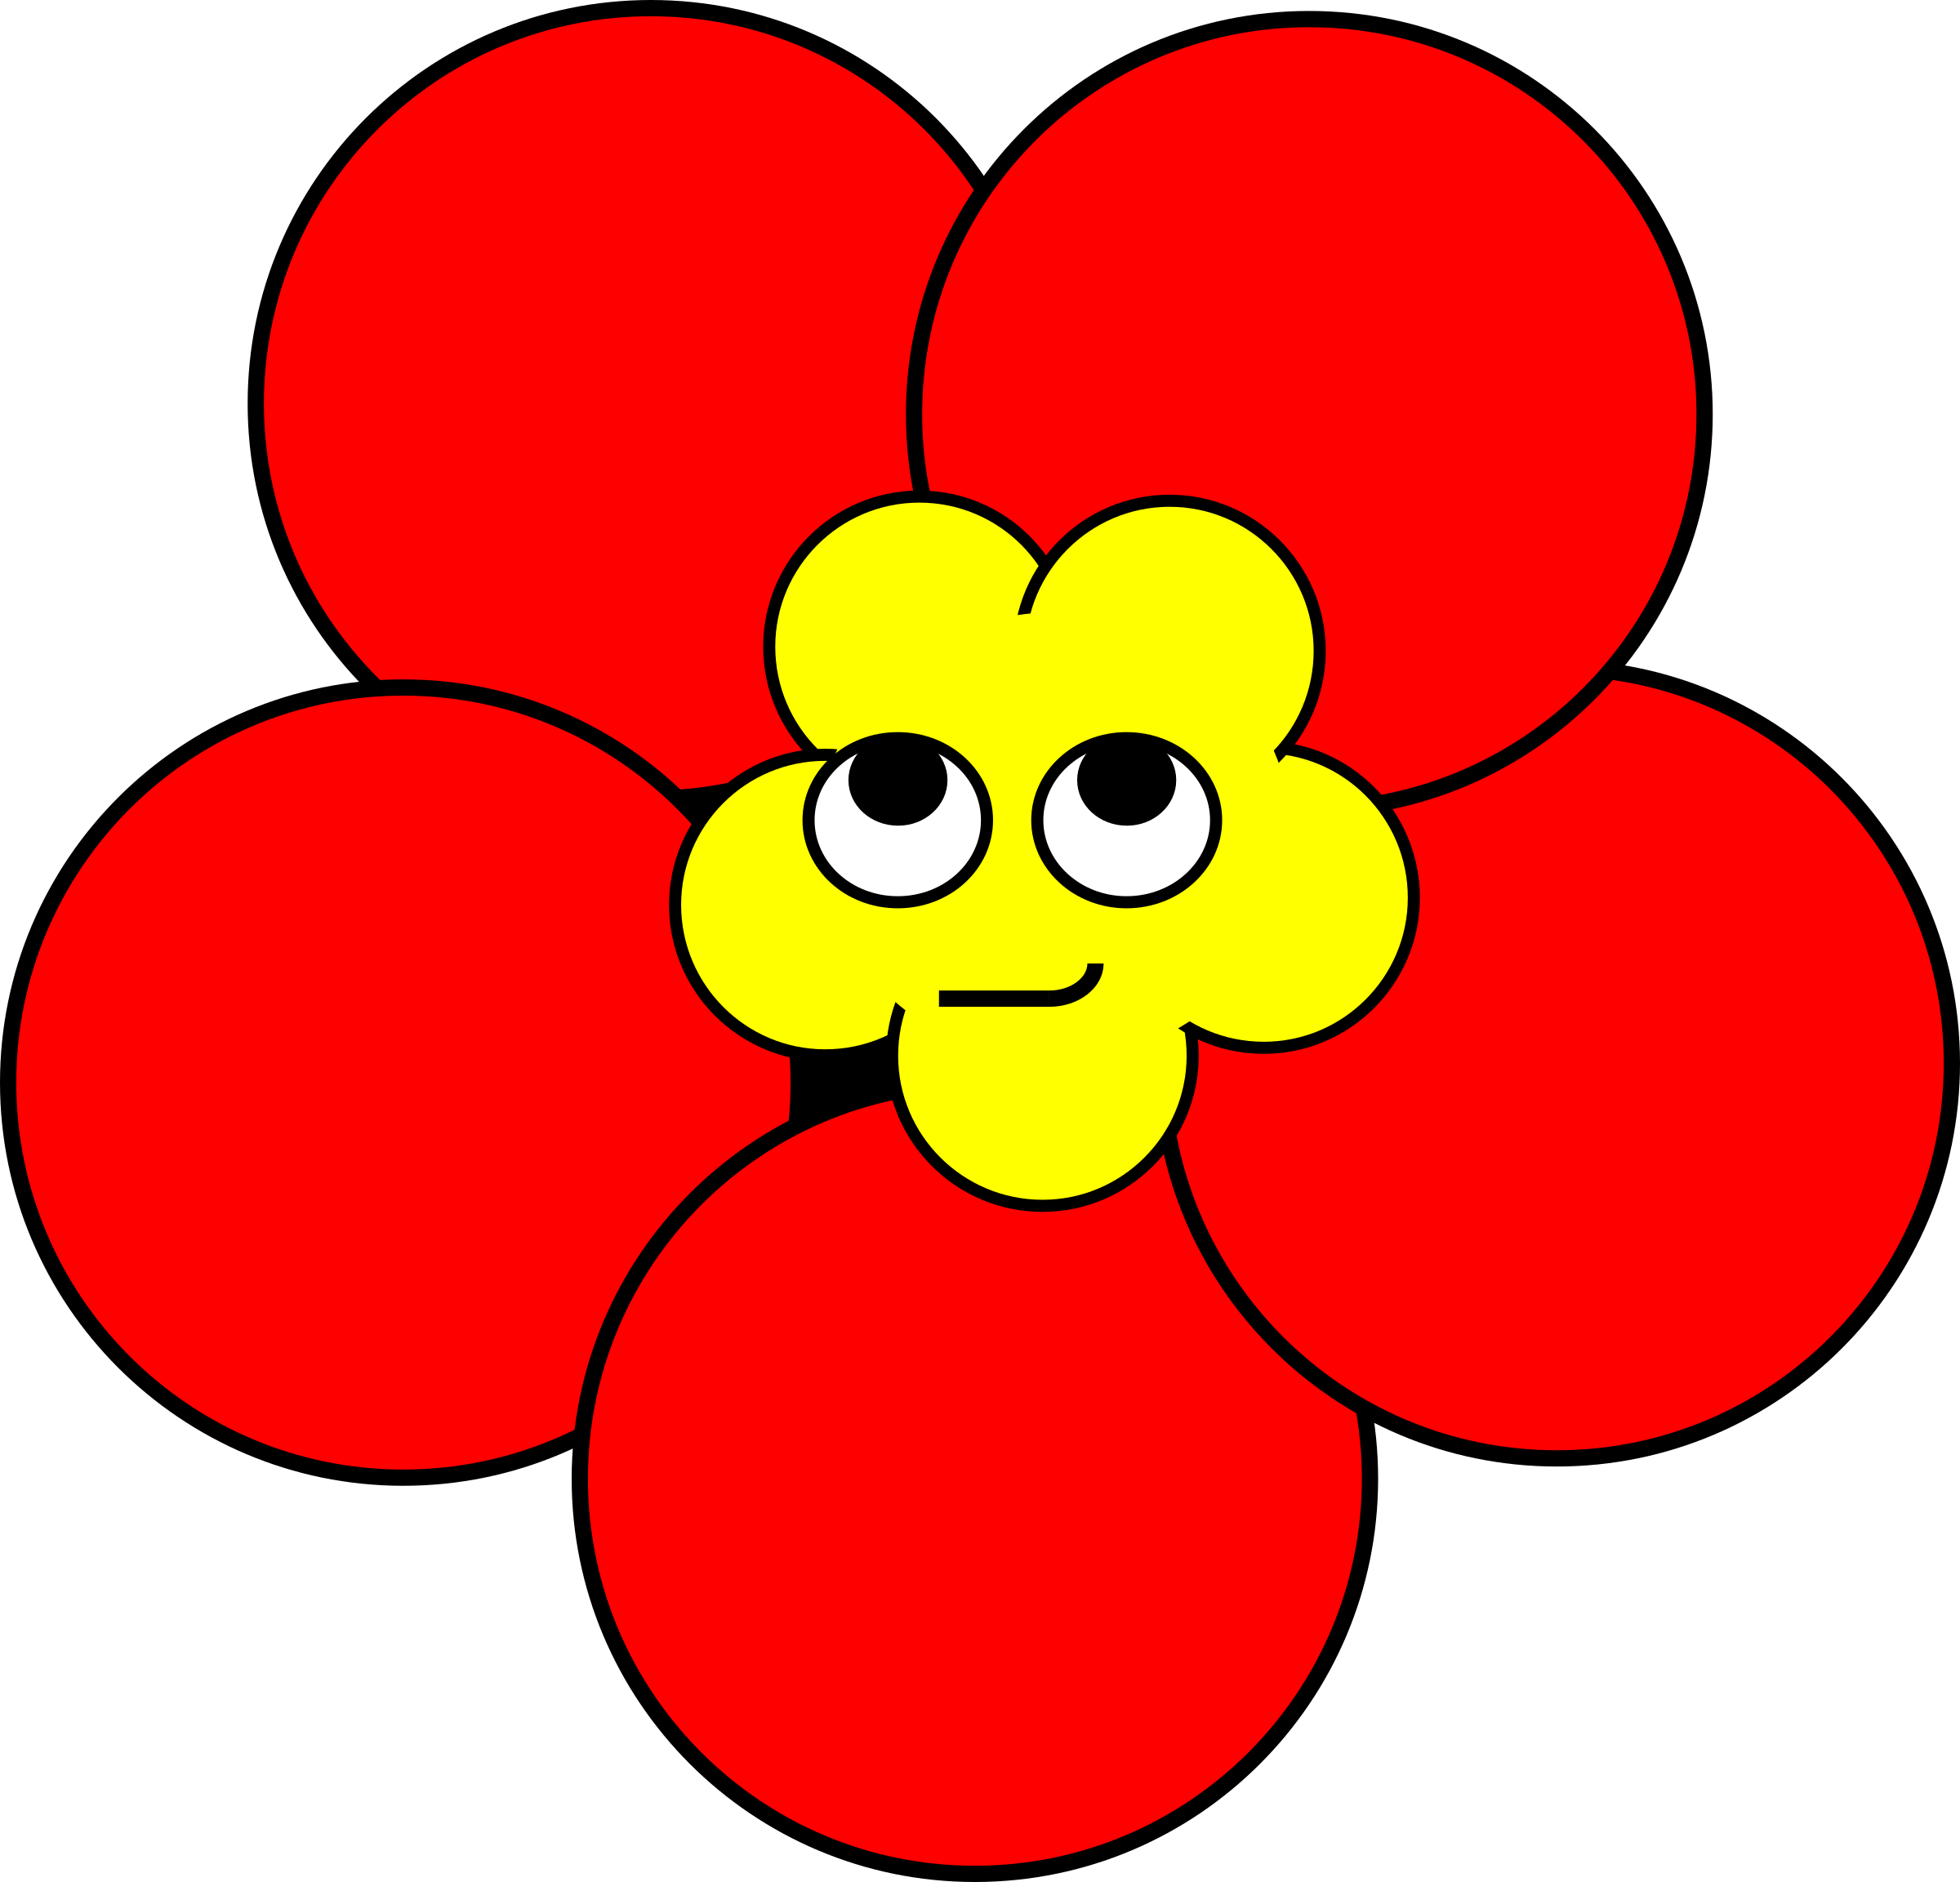 Poppy Smirk - Poppy Flower With A Face (2400x2305)